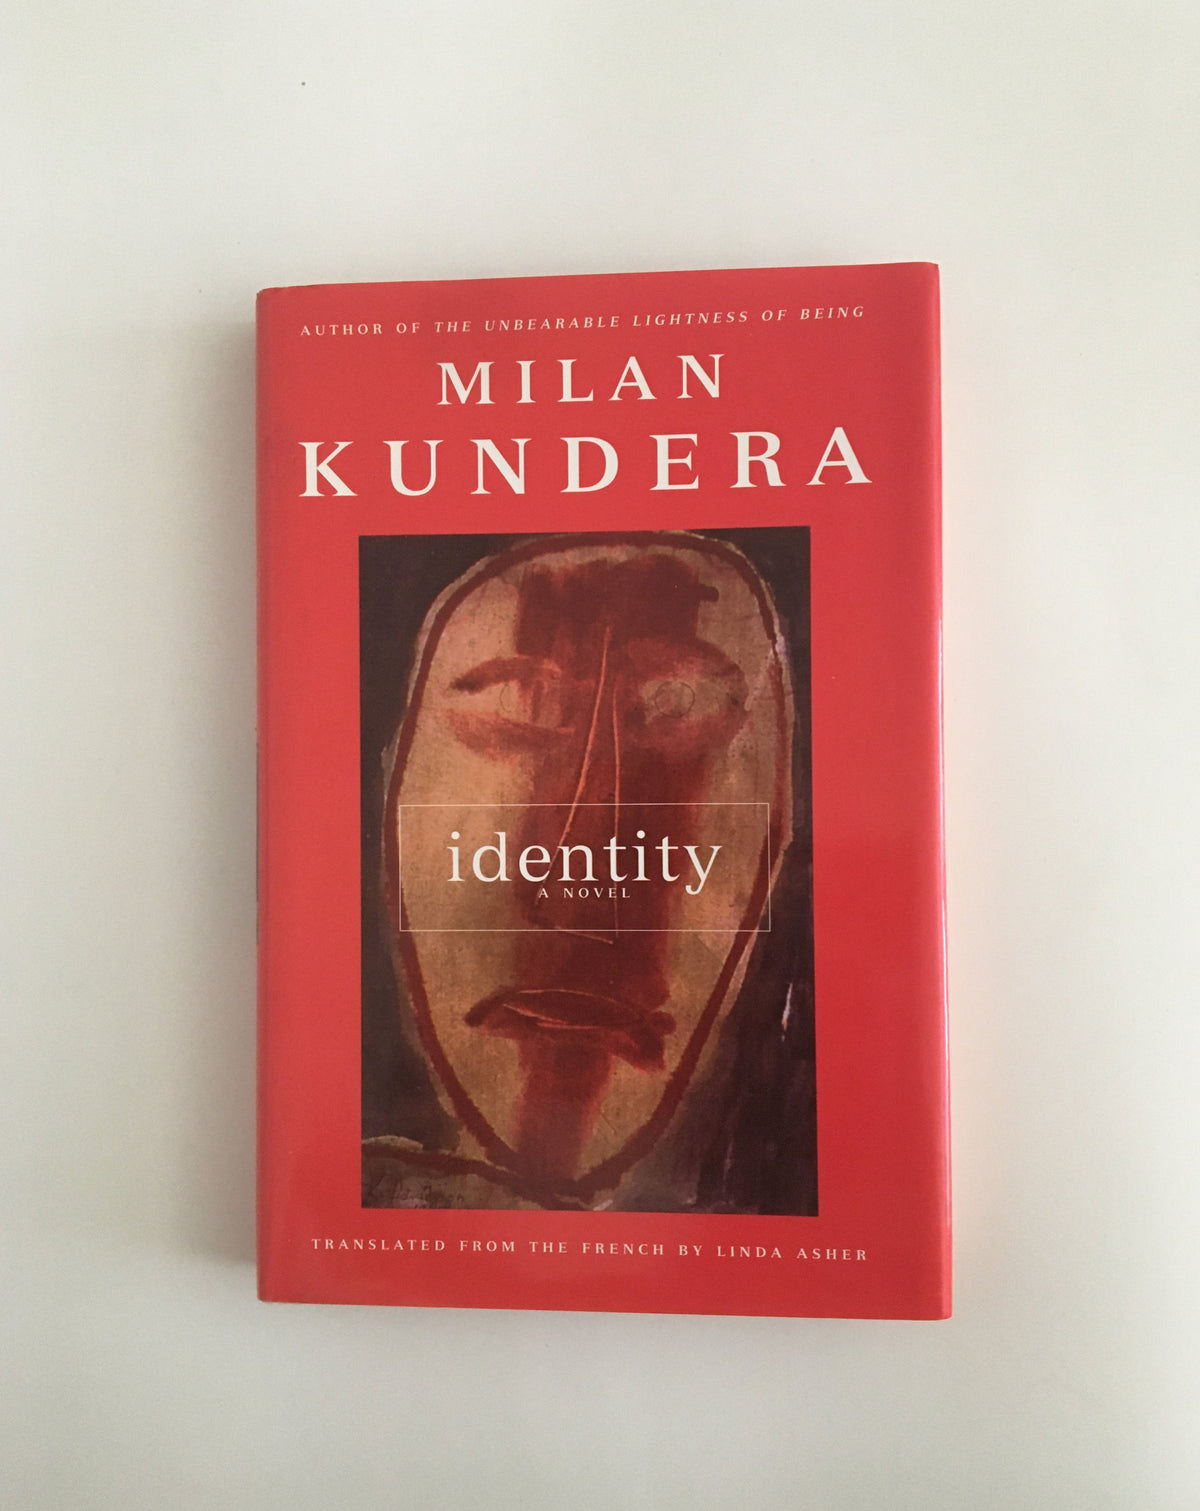 Identity by Milan Kundera